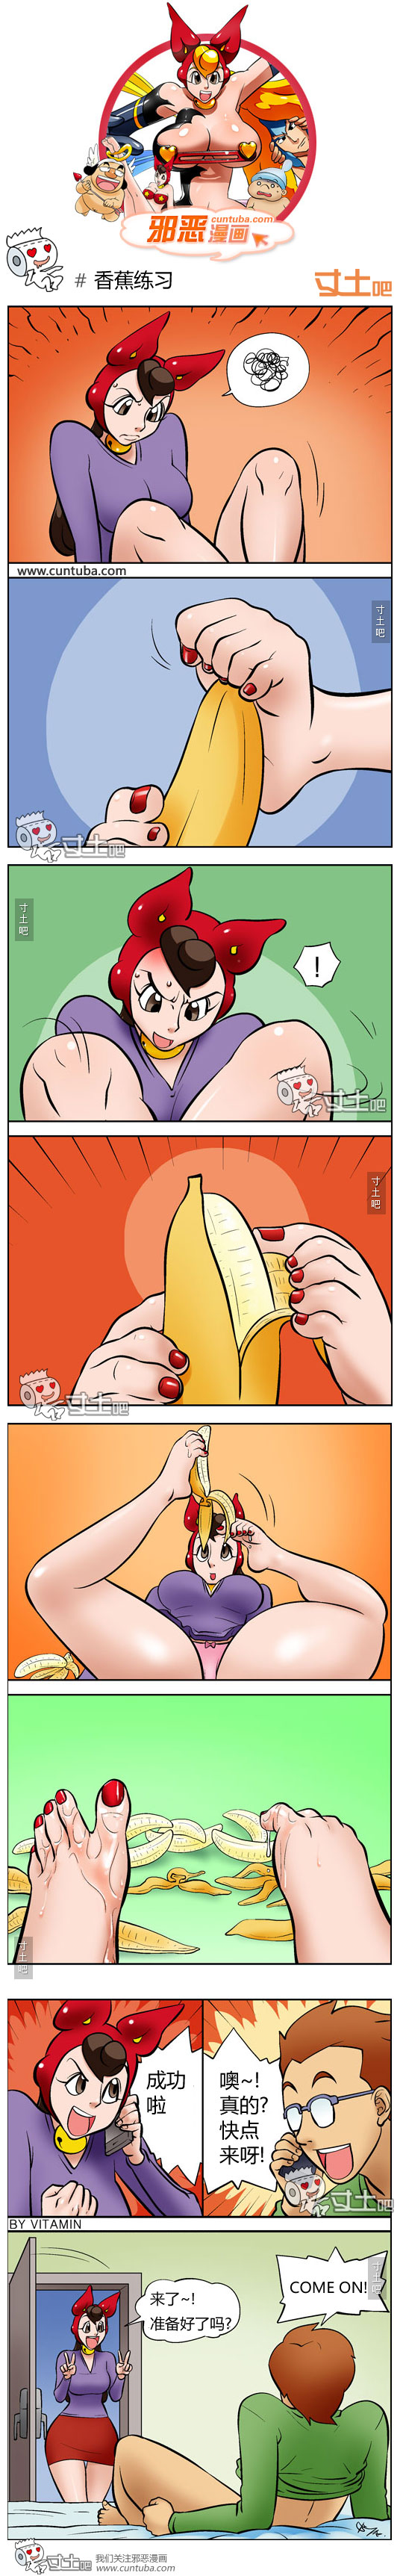 邪恶漫画香蕉练习